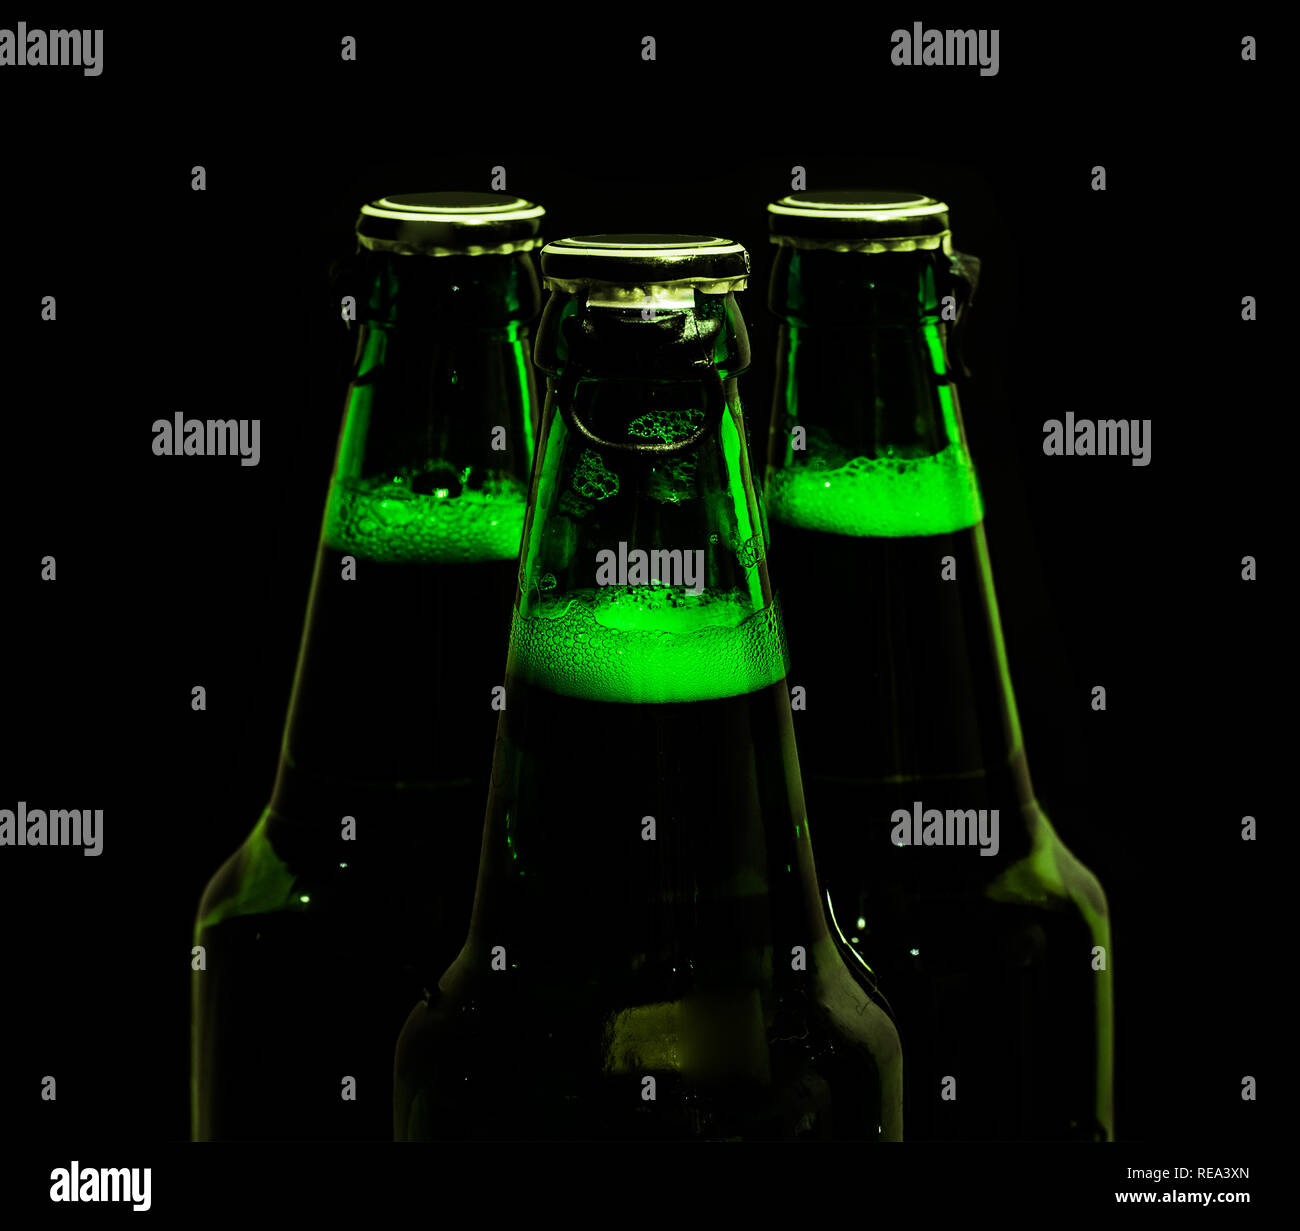 beer bottles in the dark Stock Photo